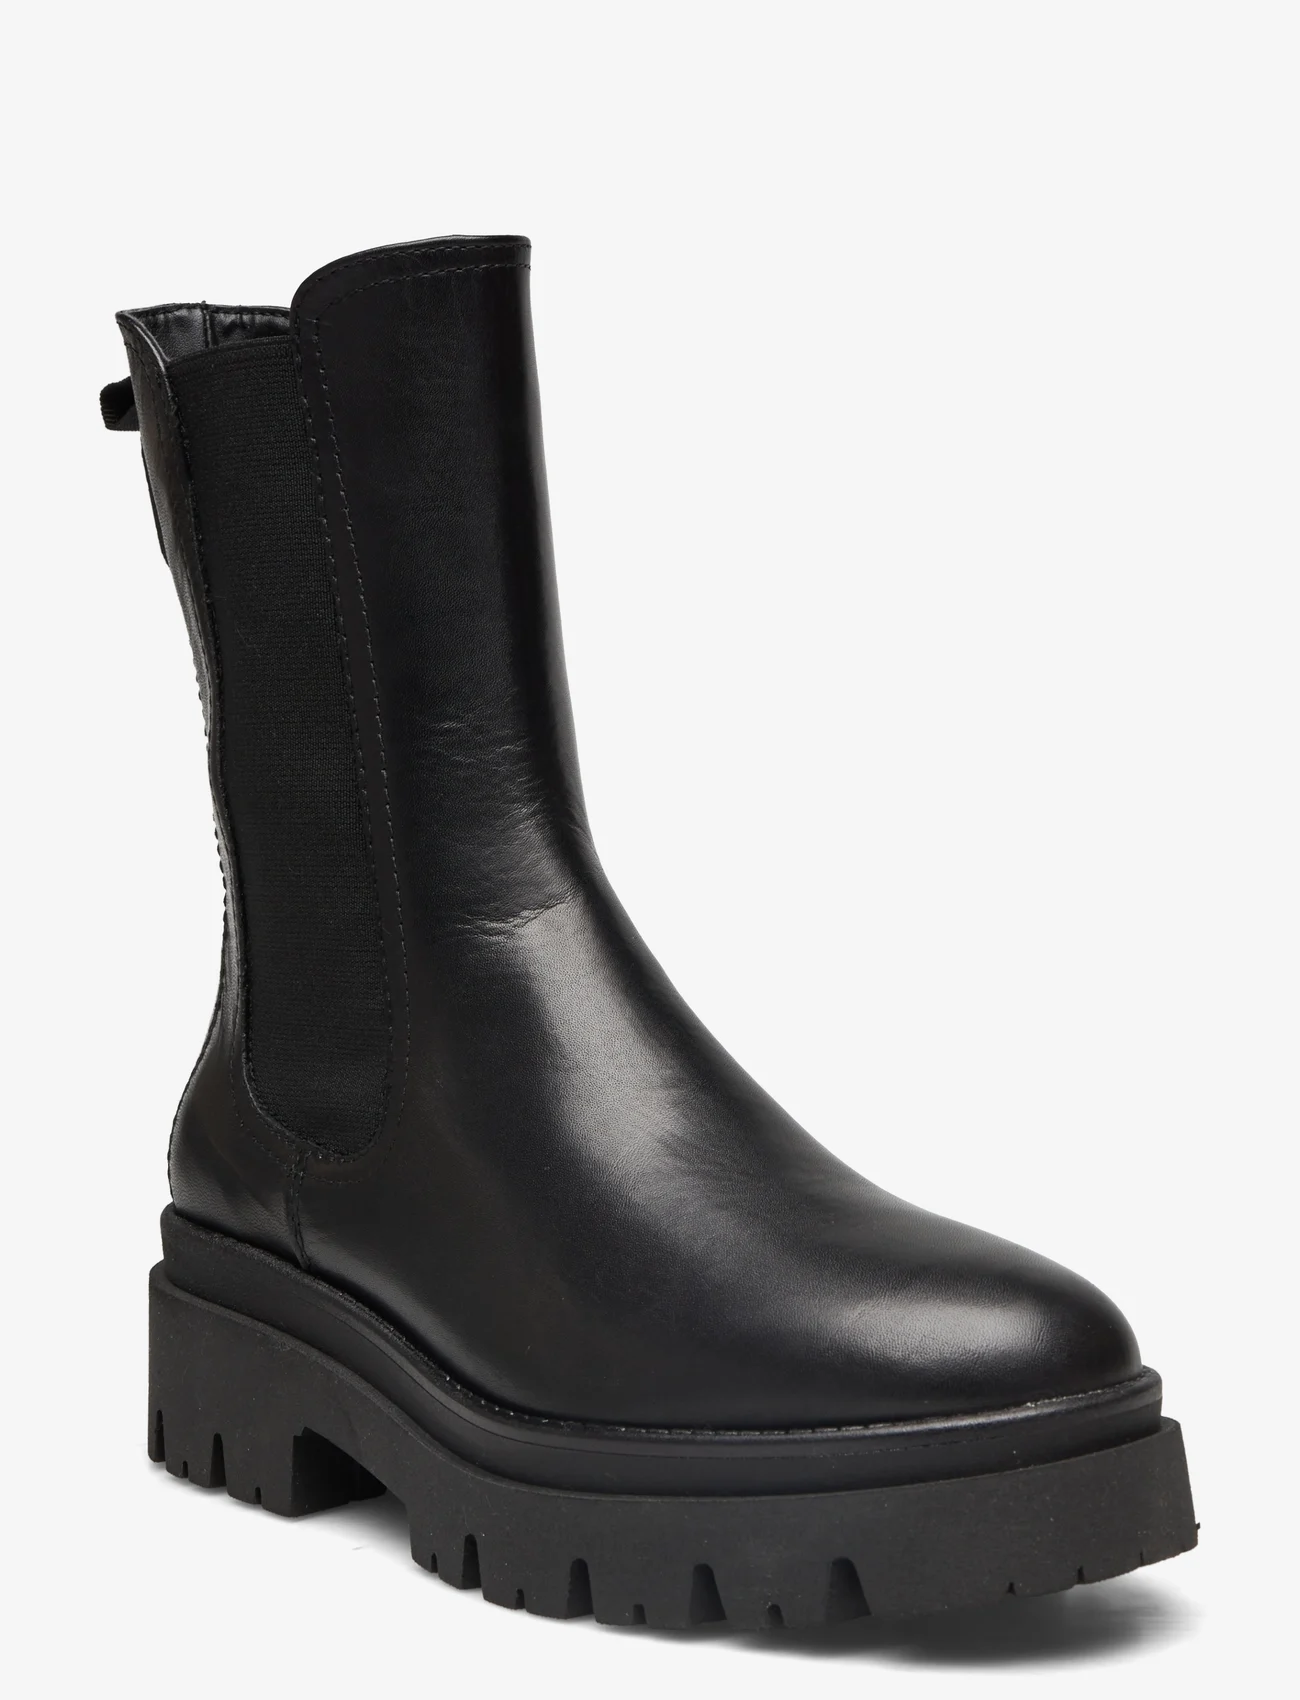 Tamaris - Women Boots - flade ankelstøvler - black - 0